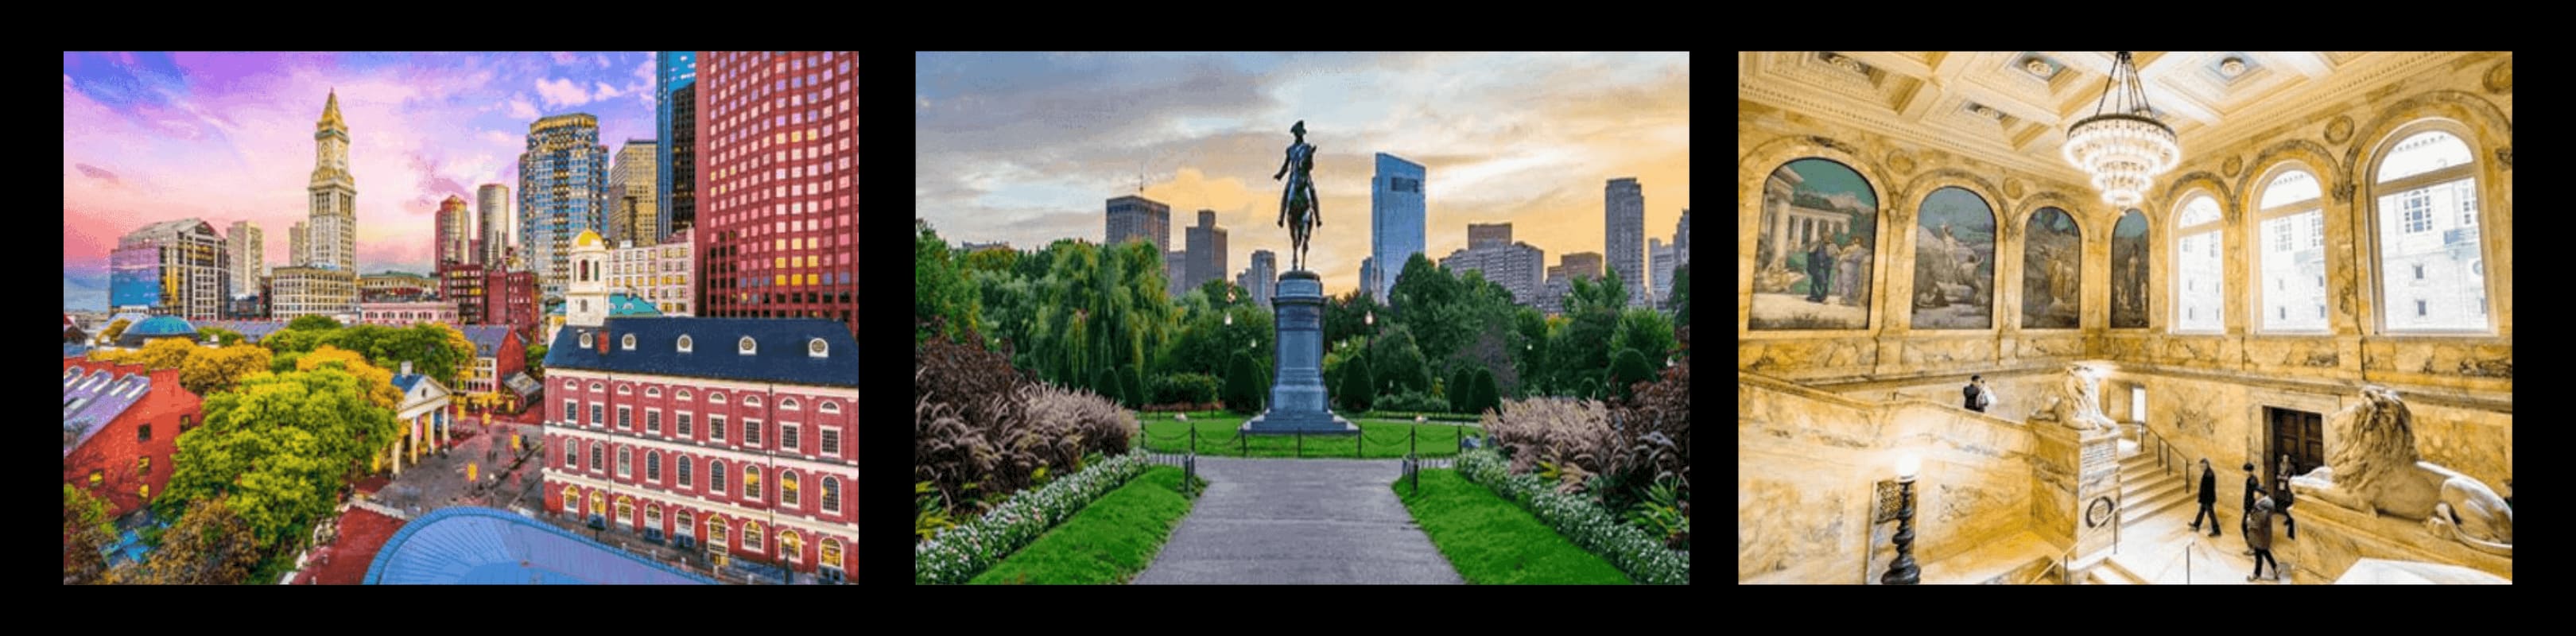 BOSTON_HISTORICA